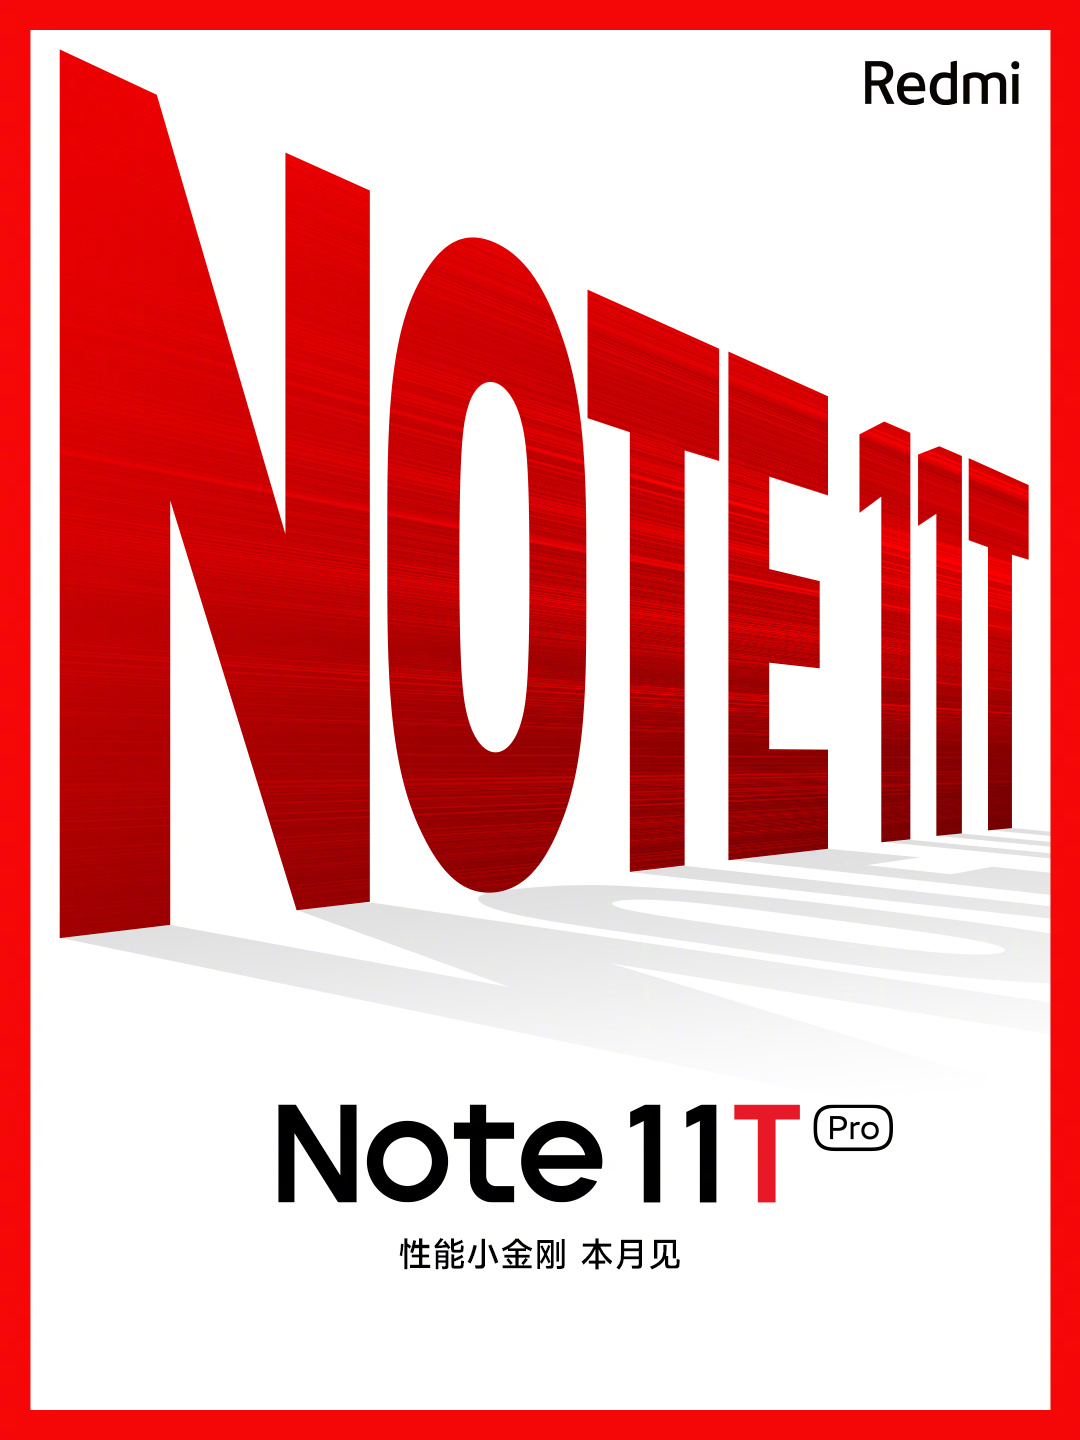 全新Redmi Note系列本月发布：命名Note 11T